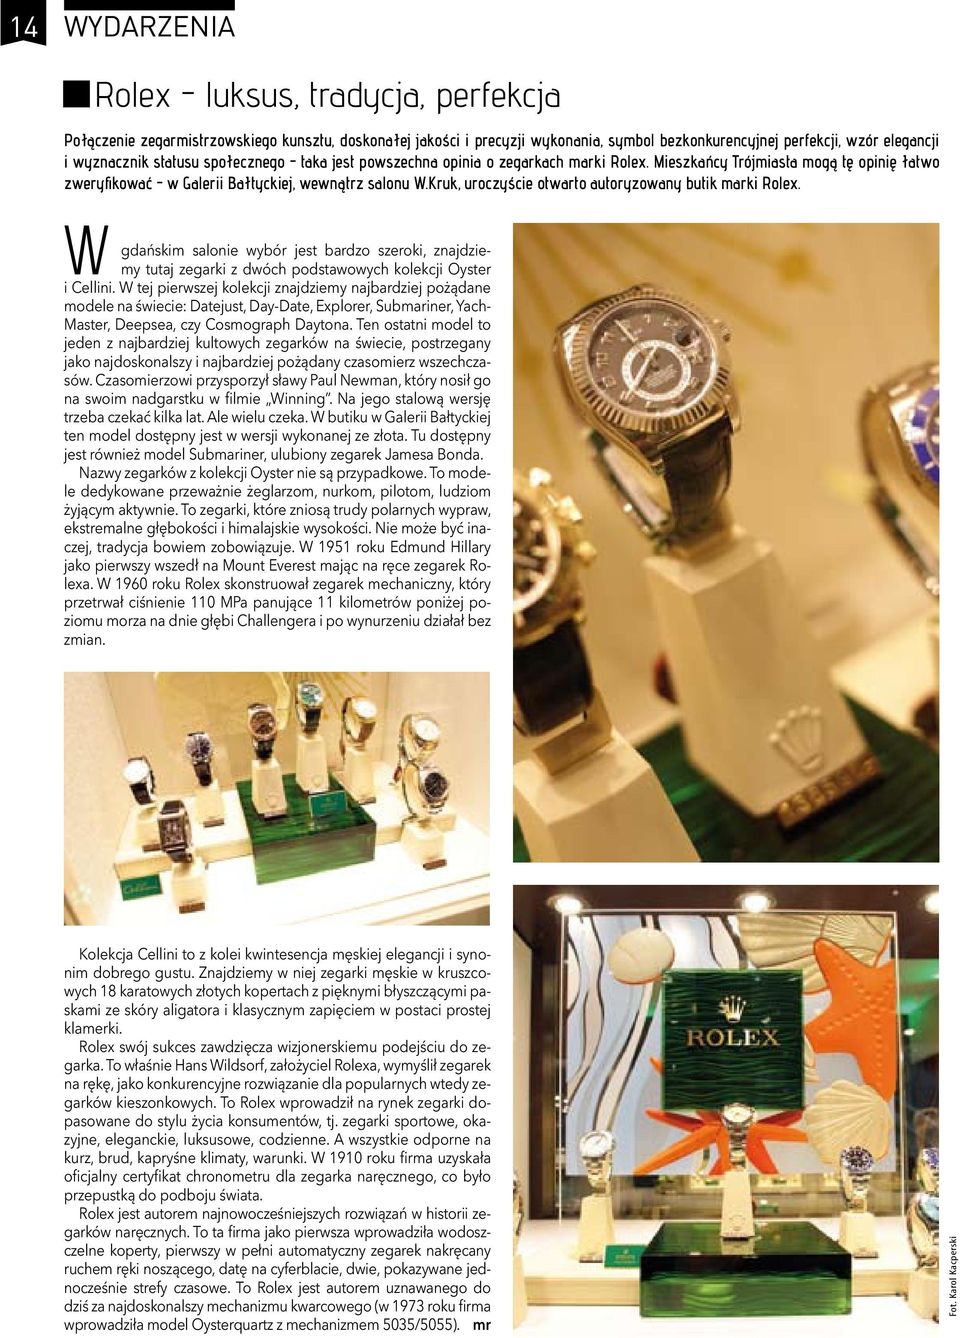 Kruk, uroczyście otwarto autoryzowany butik marki Rolex. w gdańskim salonie wybór jest bardzo szeroki, znajdziemy tutaj zegarki z dwóch podstawowych kolekcji Oyster i Cellini.